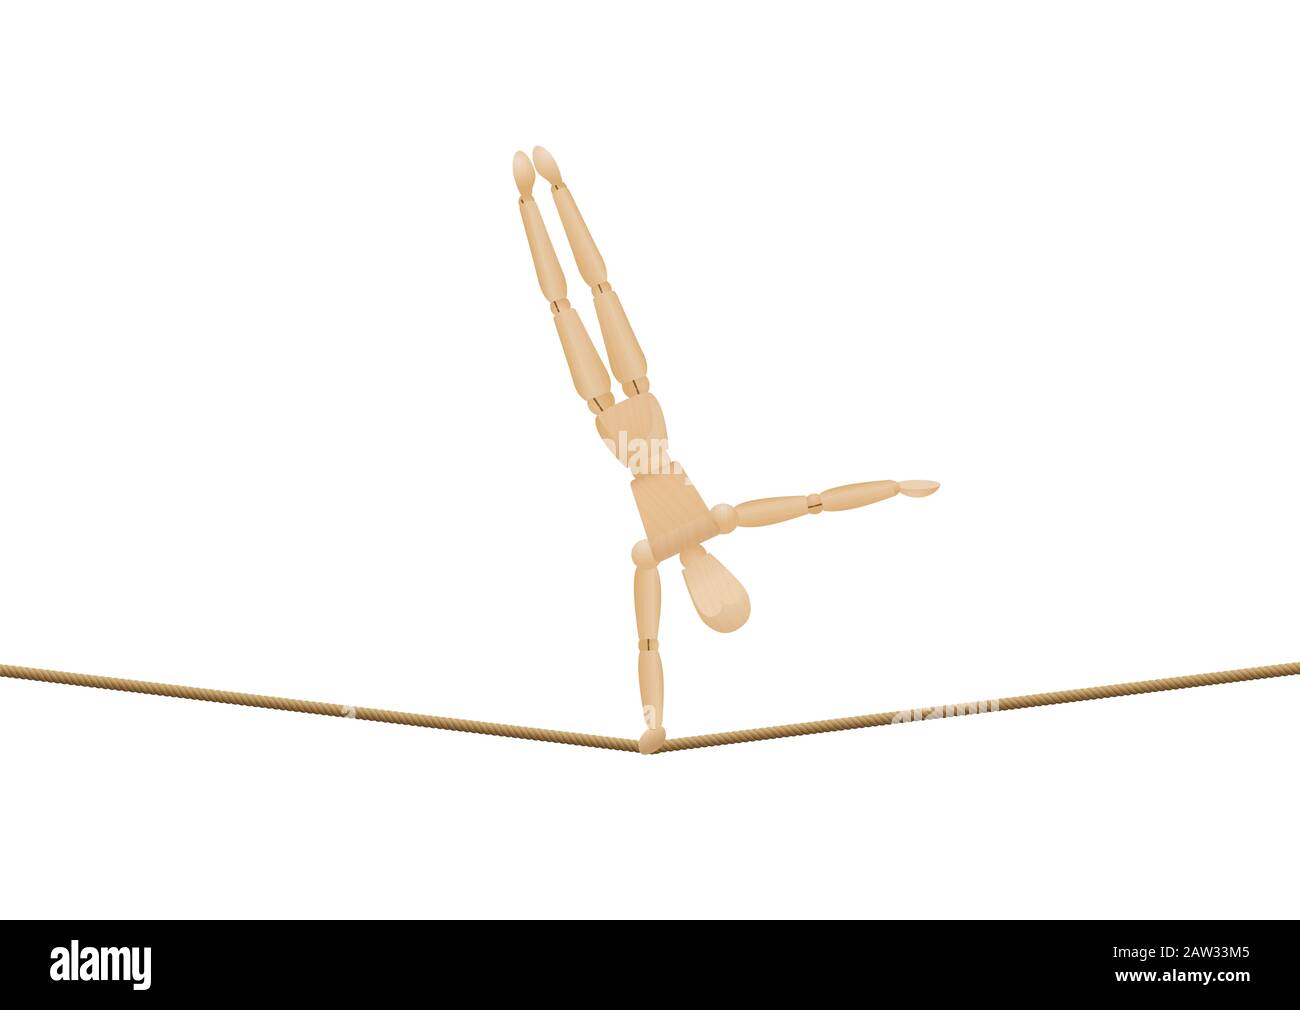 Handstand mit einer Hand. Balancierende athletische Holzmannequin, Laienfigur, auf einem langen Seil - Illustration auf Weiß. Stockfoto